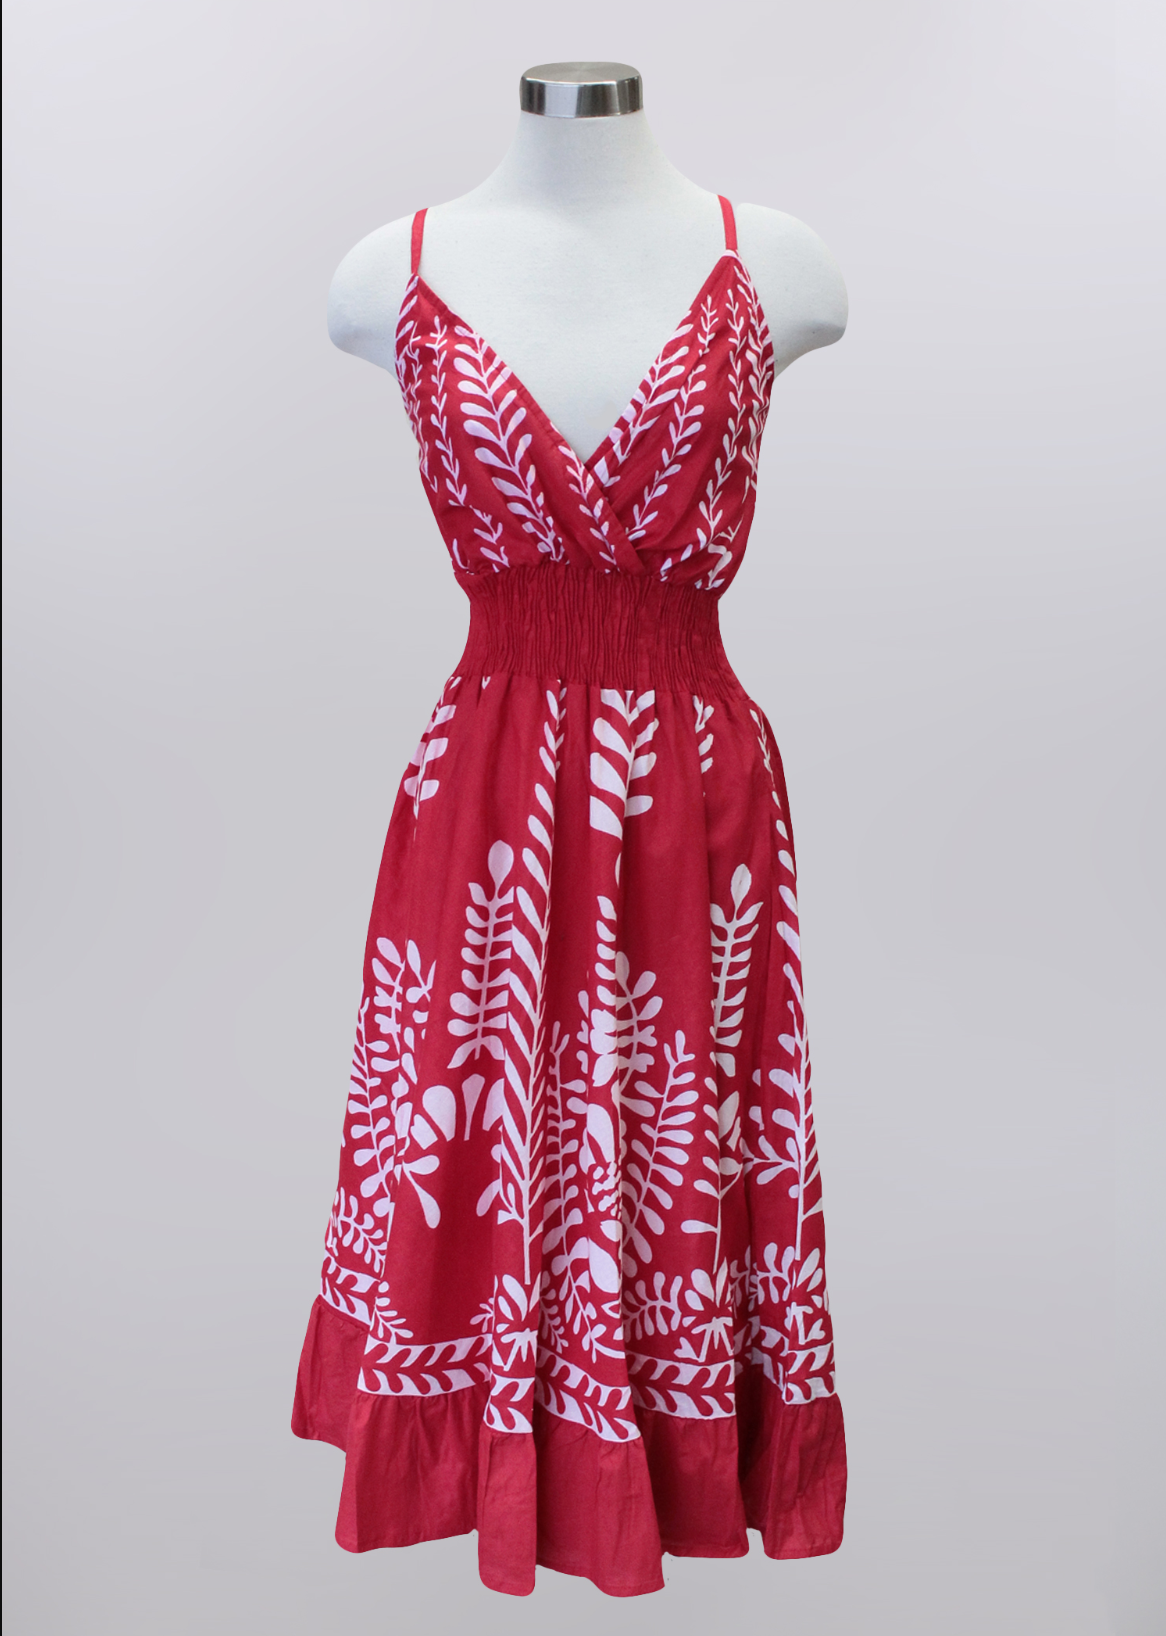 Keren Hart- Red/White Dress with Cinch Waist